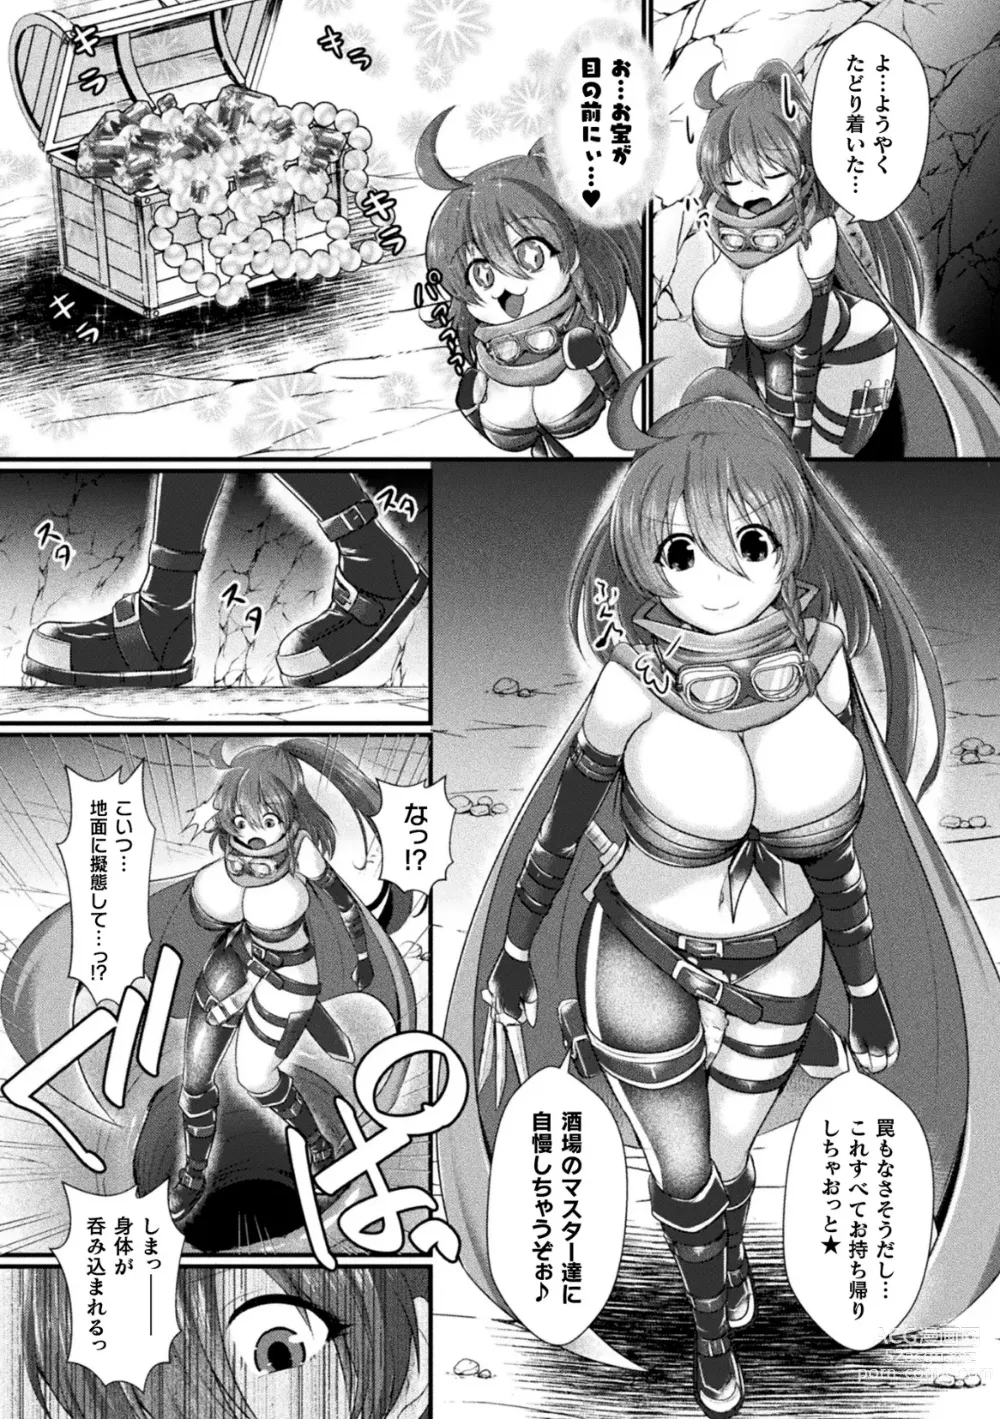 Page 7 of manga 2D Comic Magazine Futanari Kabe Sao Kabe Shiri Futanari Heroine Sakusei Iki Jigoku! Vol. 2